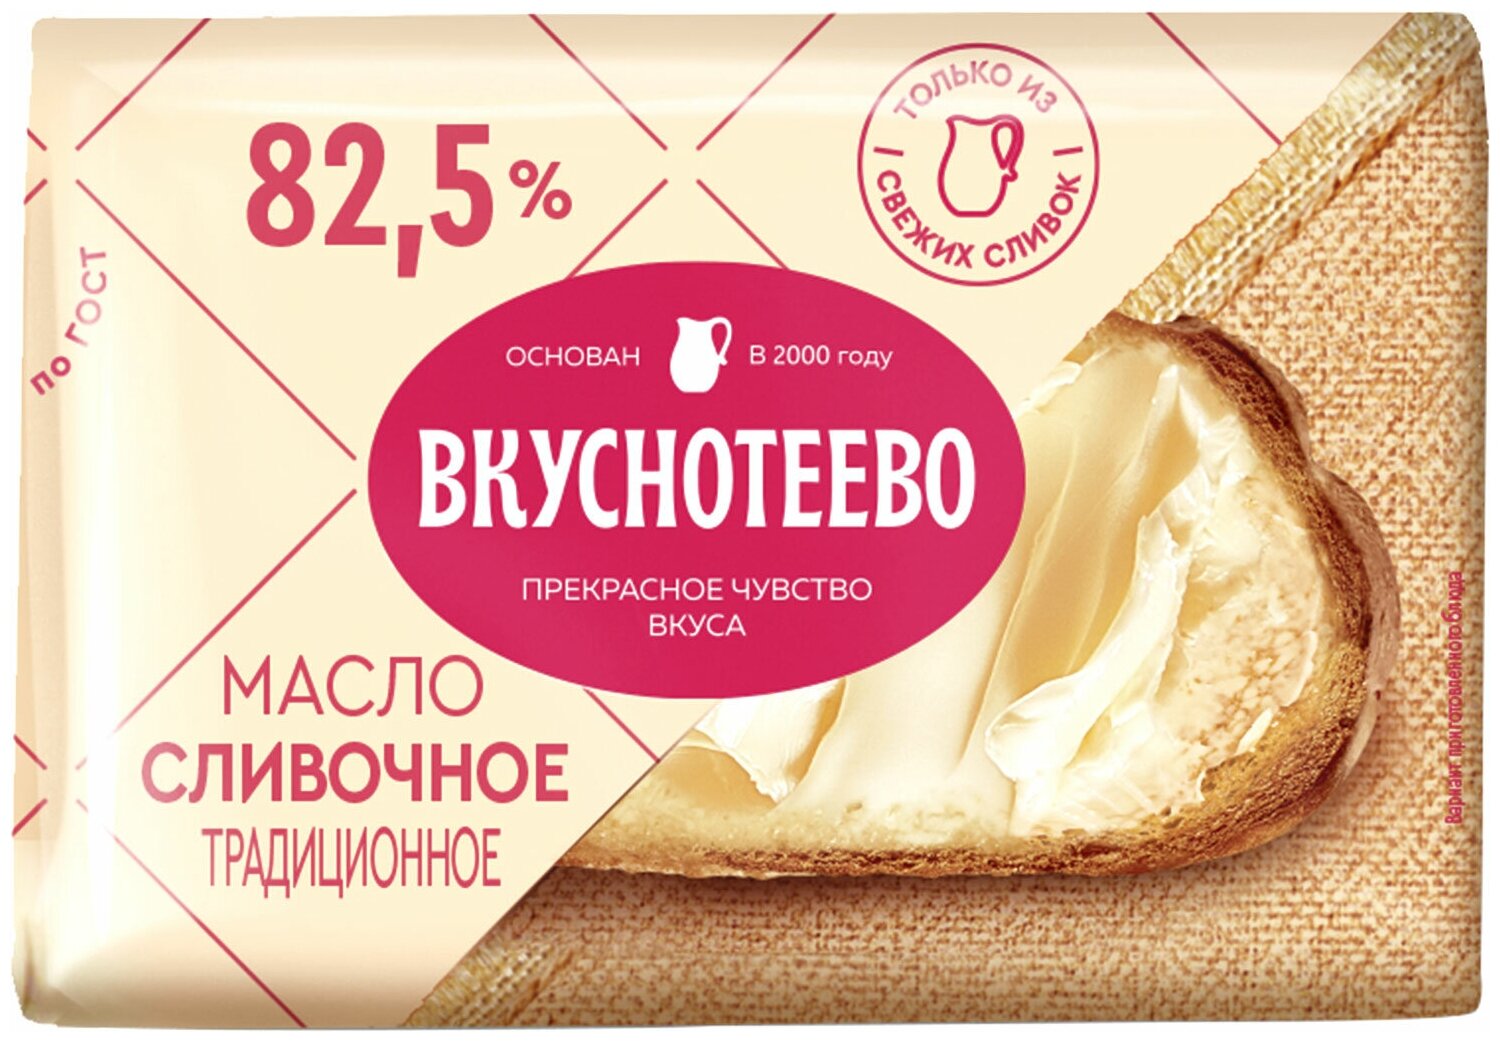 Масло сливочное традиционное Вкуснотеево 82,5%